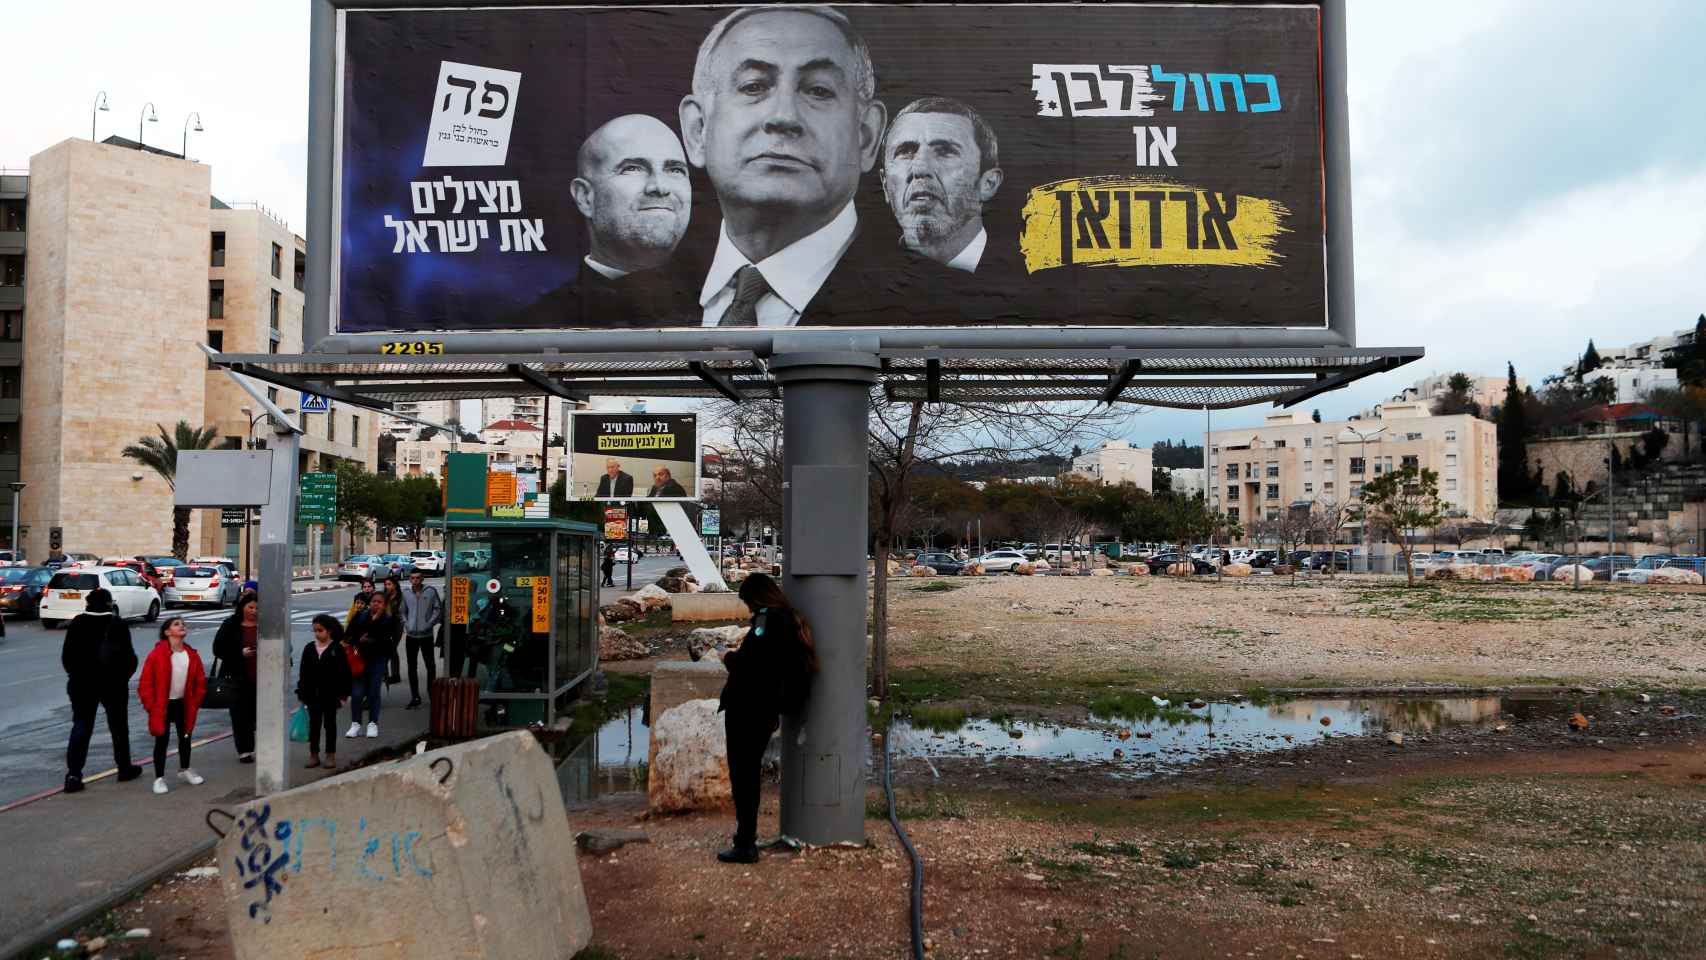 Cartel electoral del partido Blanco y Azul en el que critica a Netanyahu con los mensajes: Azul y Blanco o Erdogan -presidente de Turquía- y Salvando a Israel.